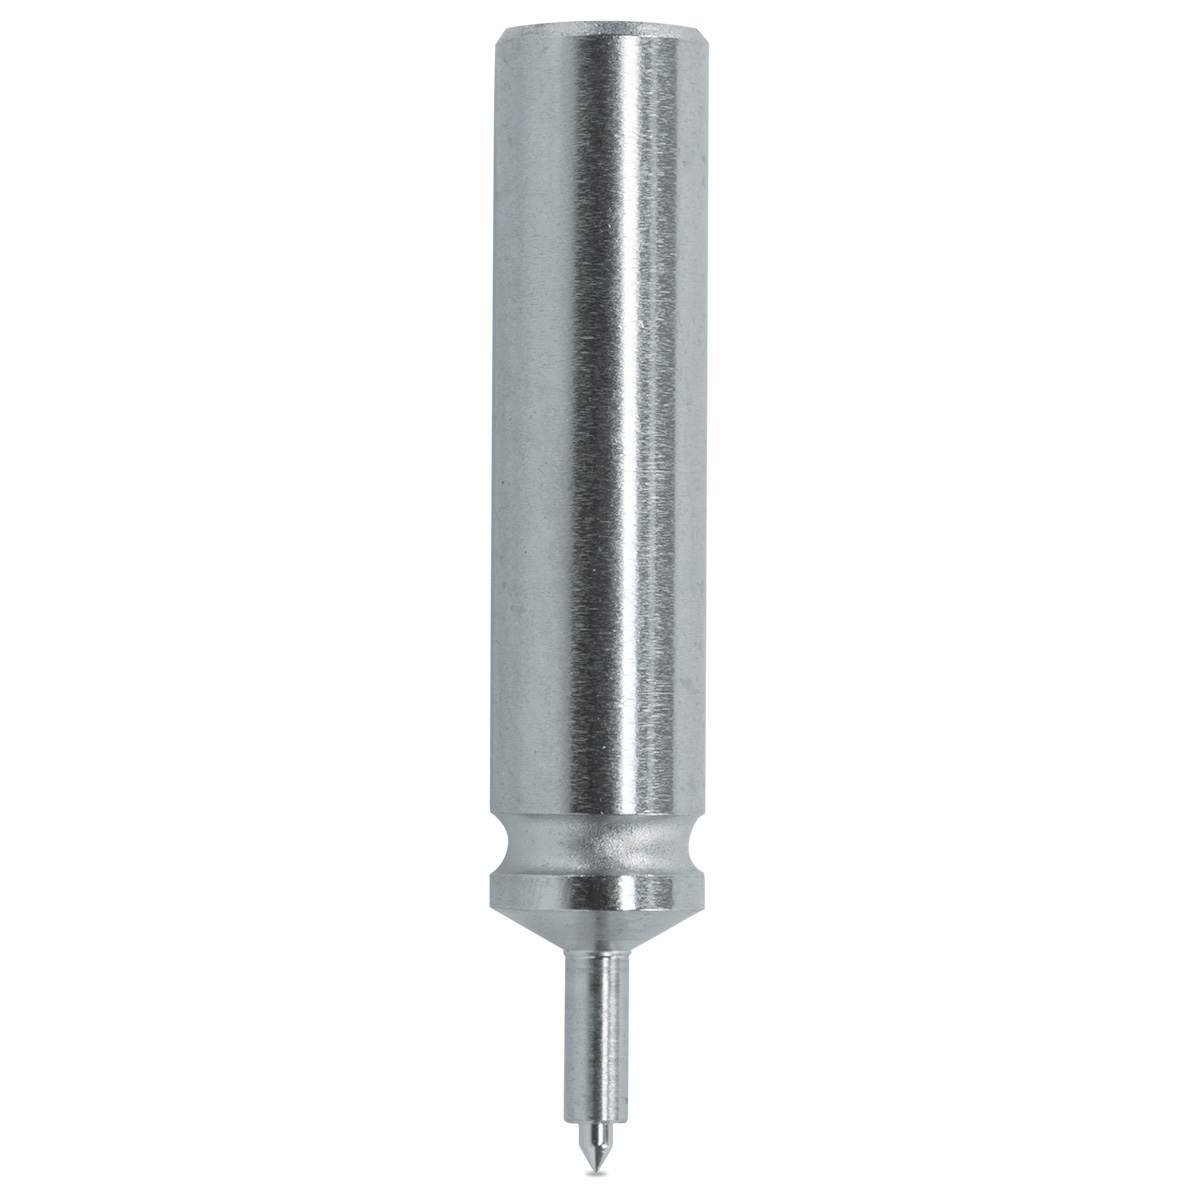 Pump pusher Horia 1000-03 N° 80, Ø body 3 mm, Ø tip 0,4 mm, support Ø 0,75 mm